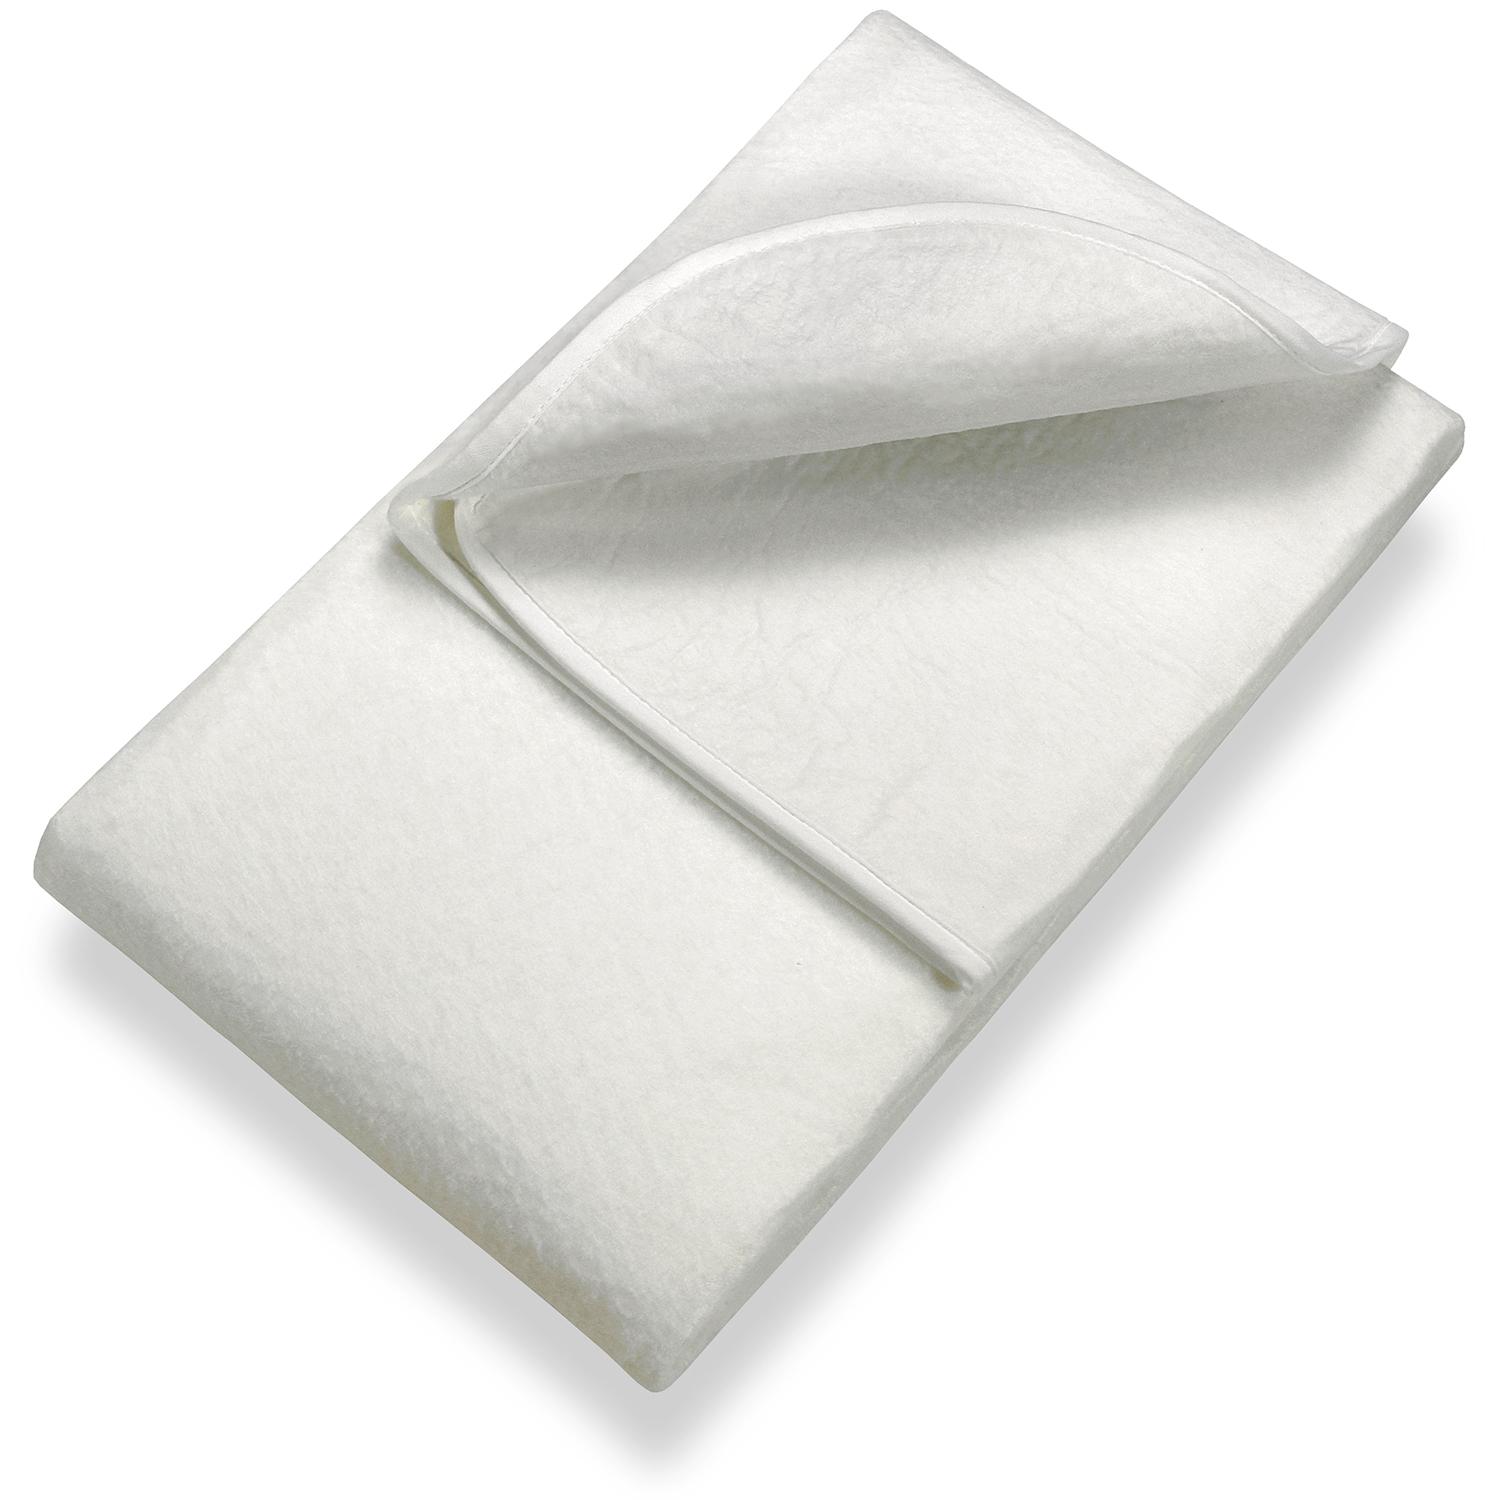 Sleezzz Basic, protège-matelas en feutre aiguilleté 90 x 200 cm, à poser sur le sommier, blanc